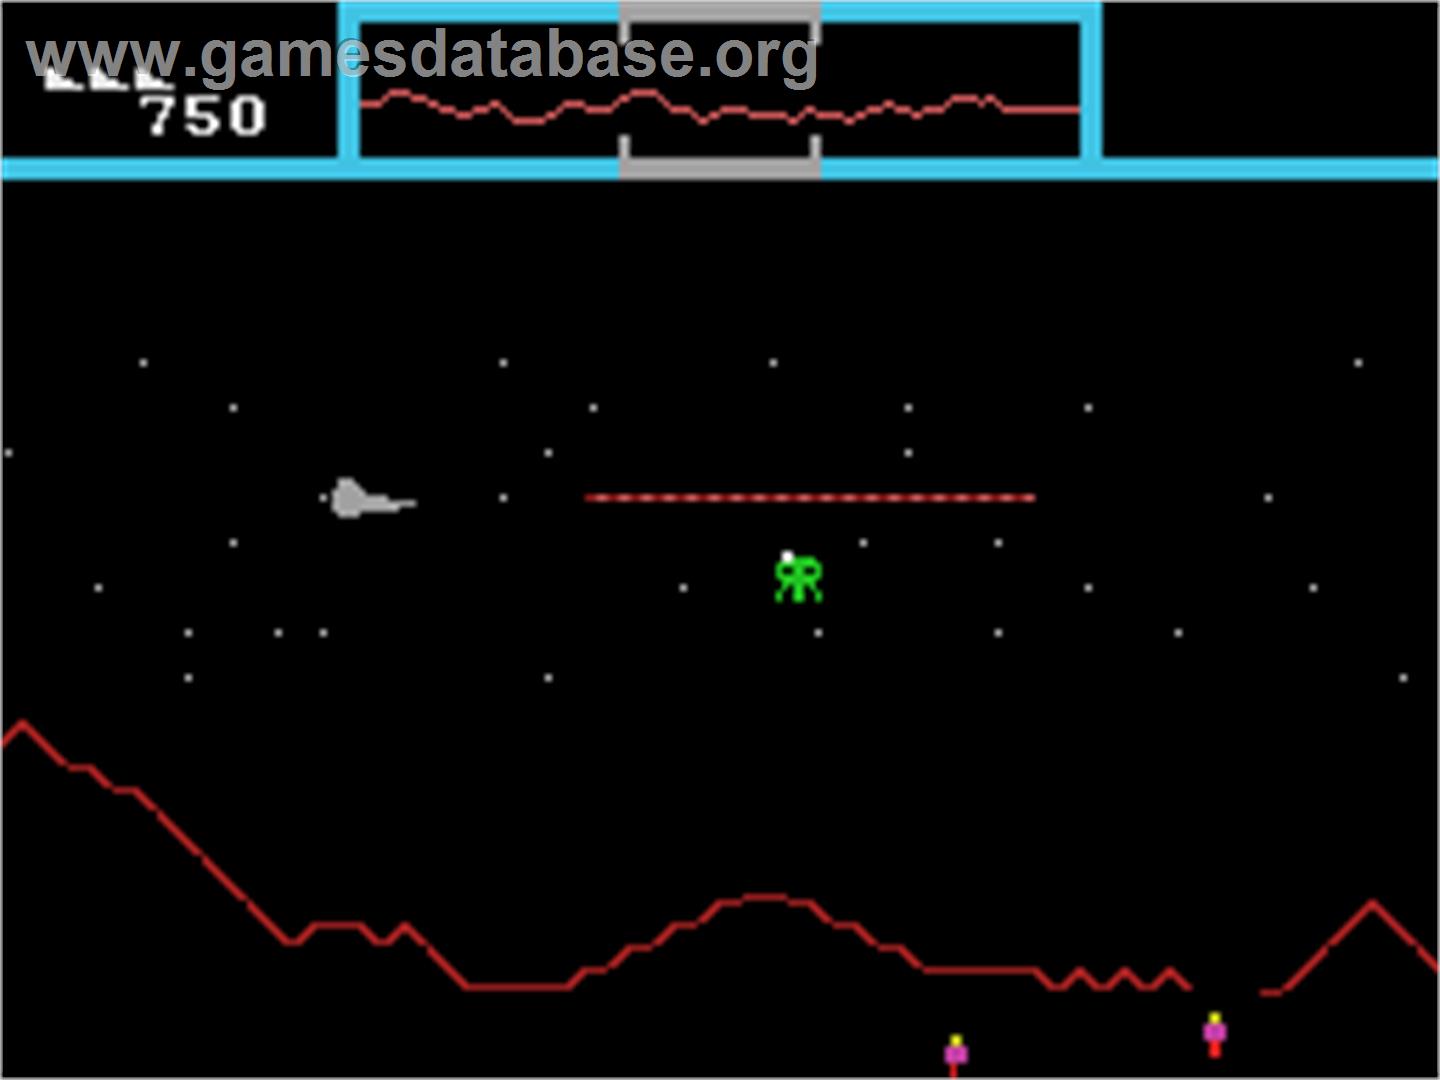 Defender_-_1983_-_Atari.jpg